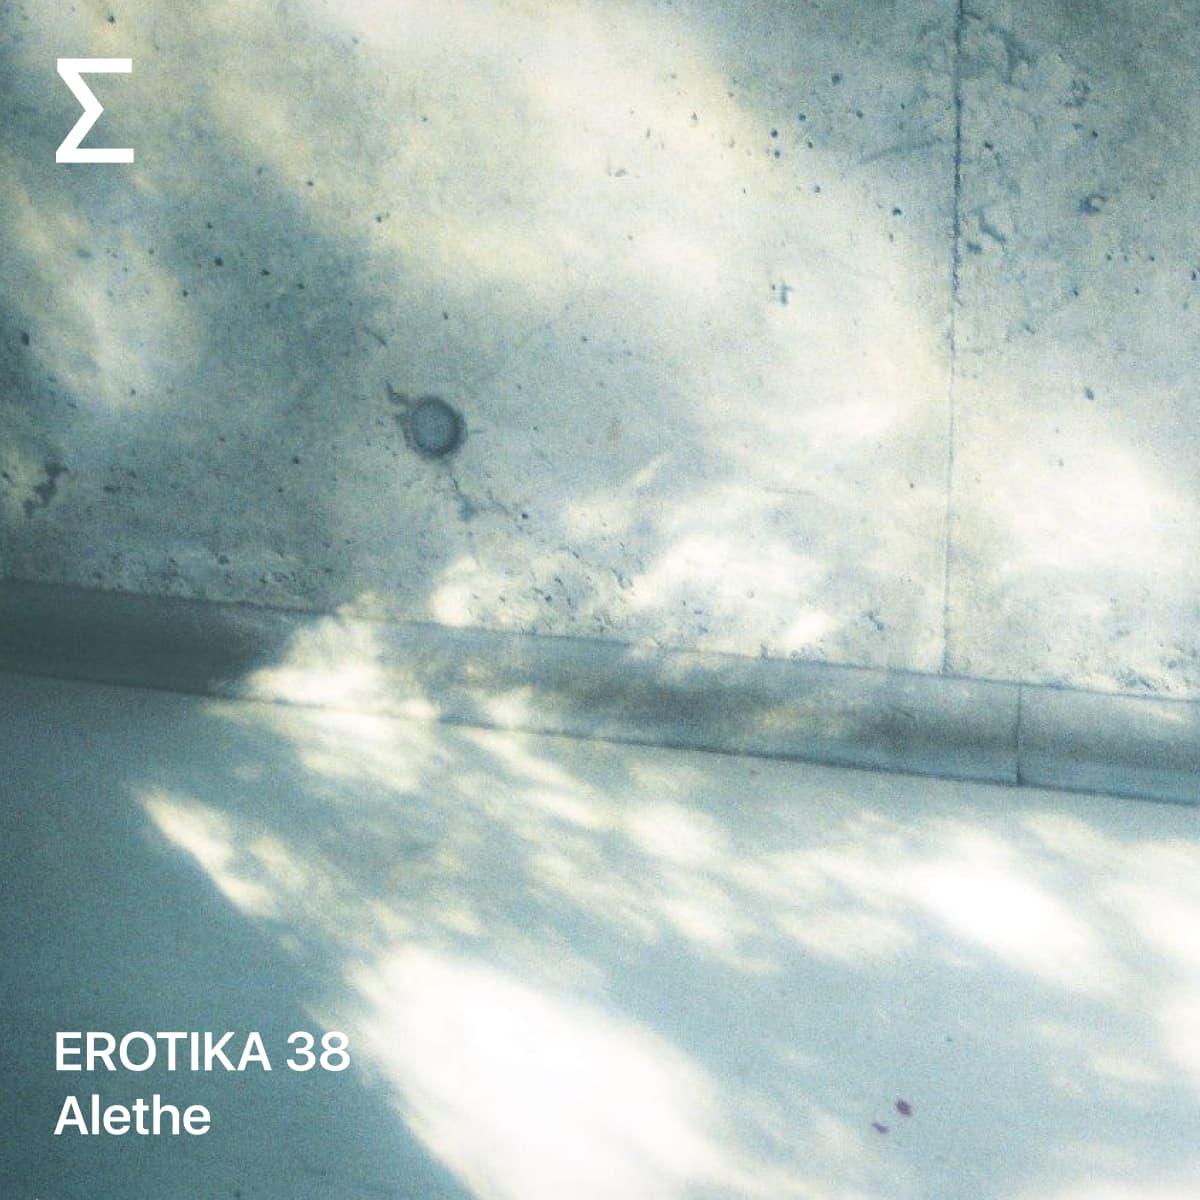 EROTIKA 38 – Alethe